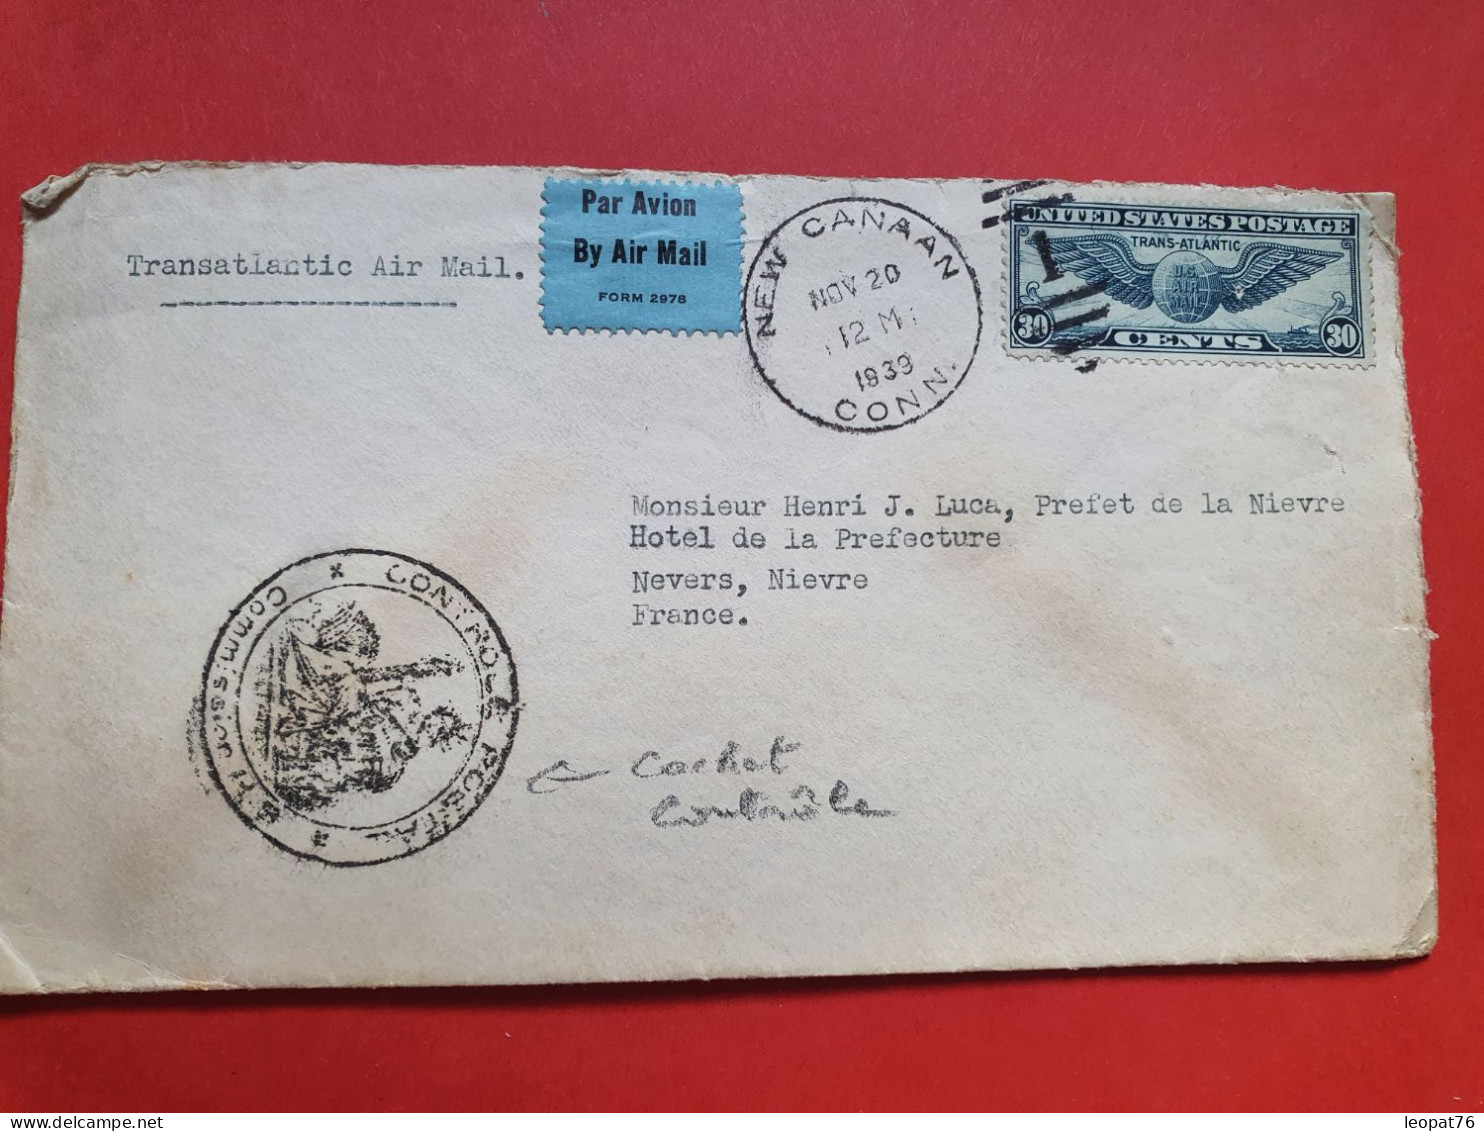 Etats Unis - Enveloppe De New Canaan Pour Un Préfet En France En 1939 Avec Cachet De Contrôle Postal - JJ 71 - Brieven En Documenten